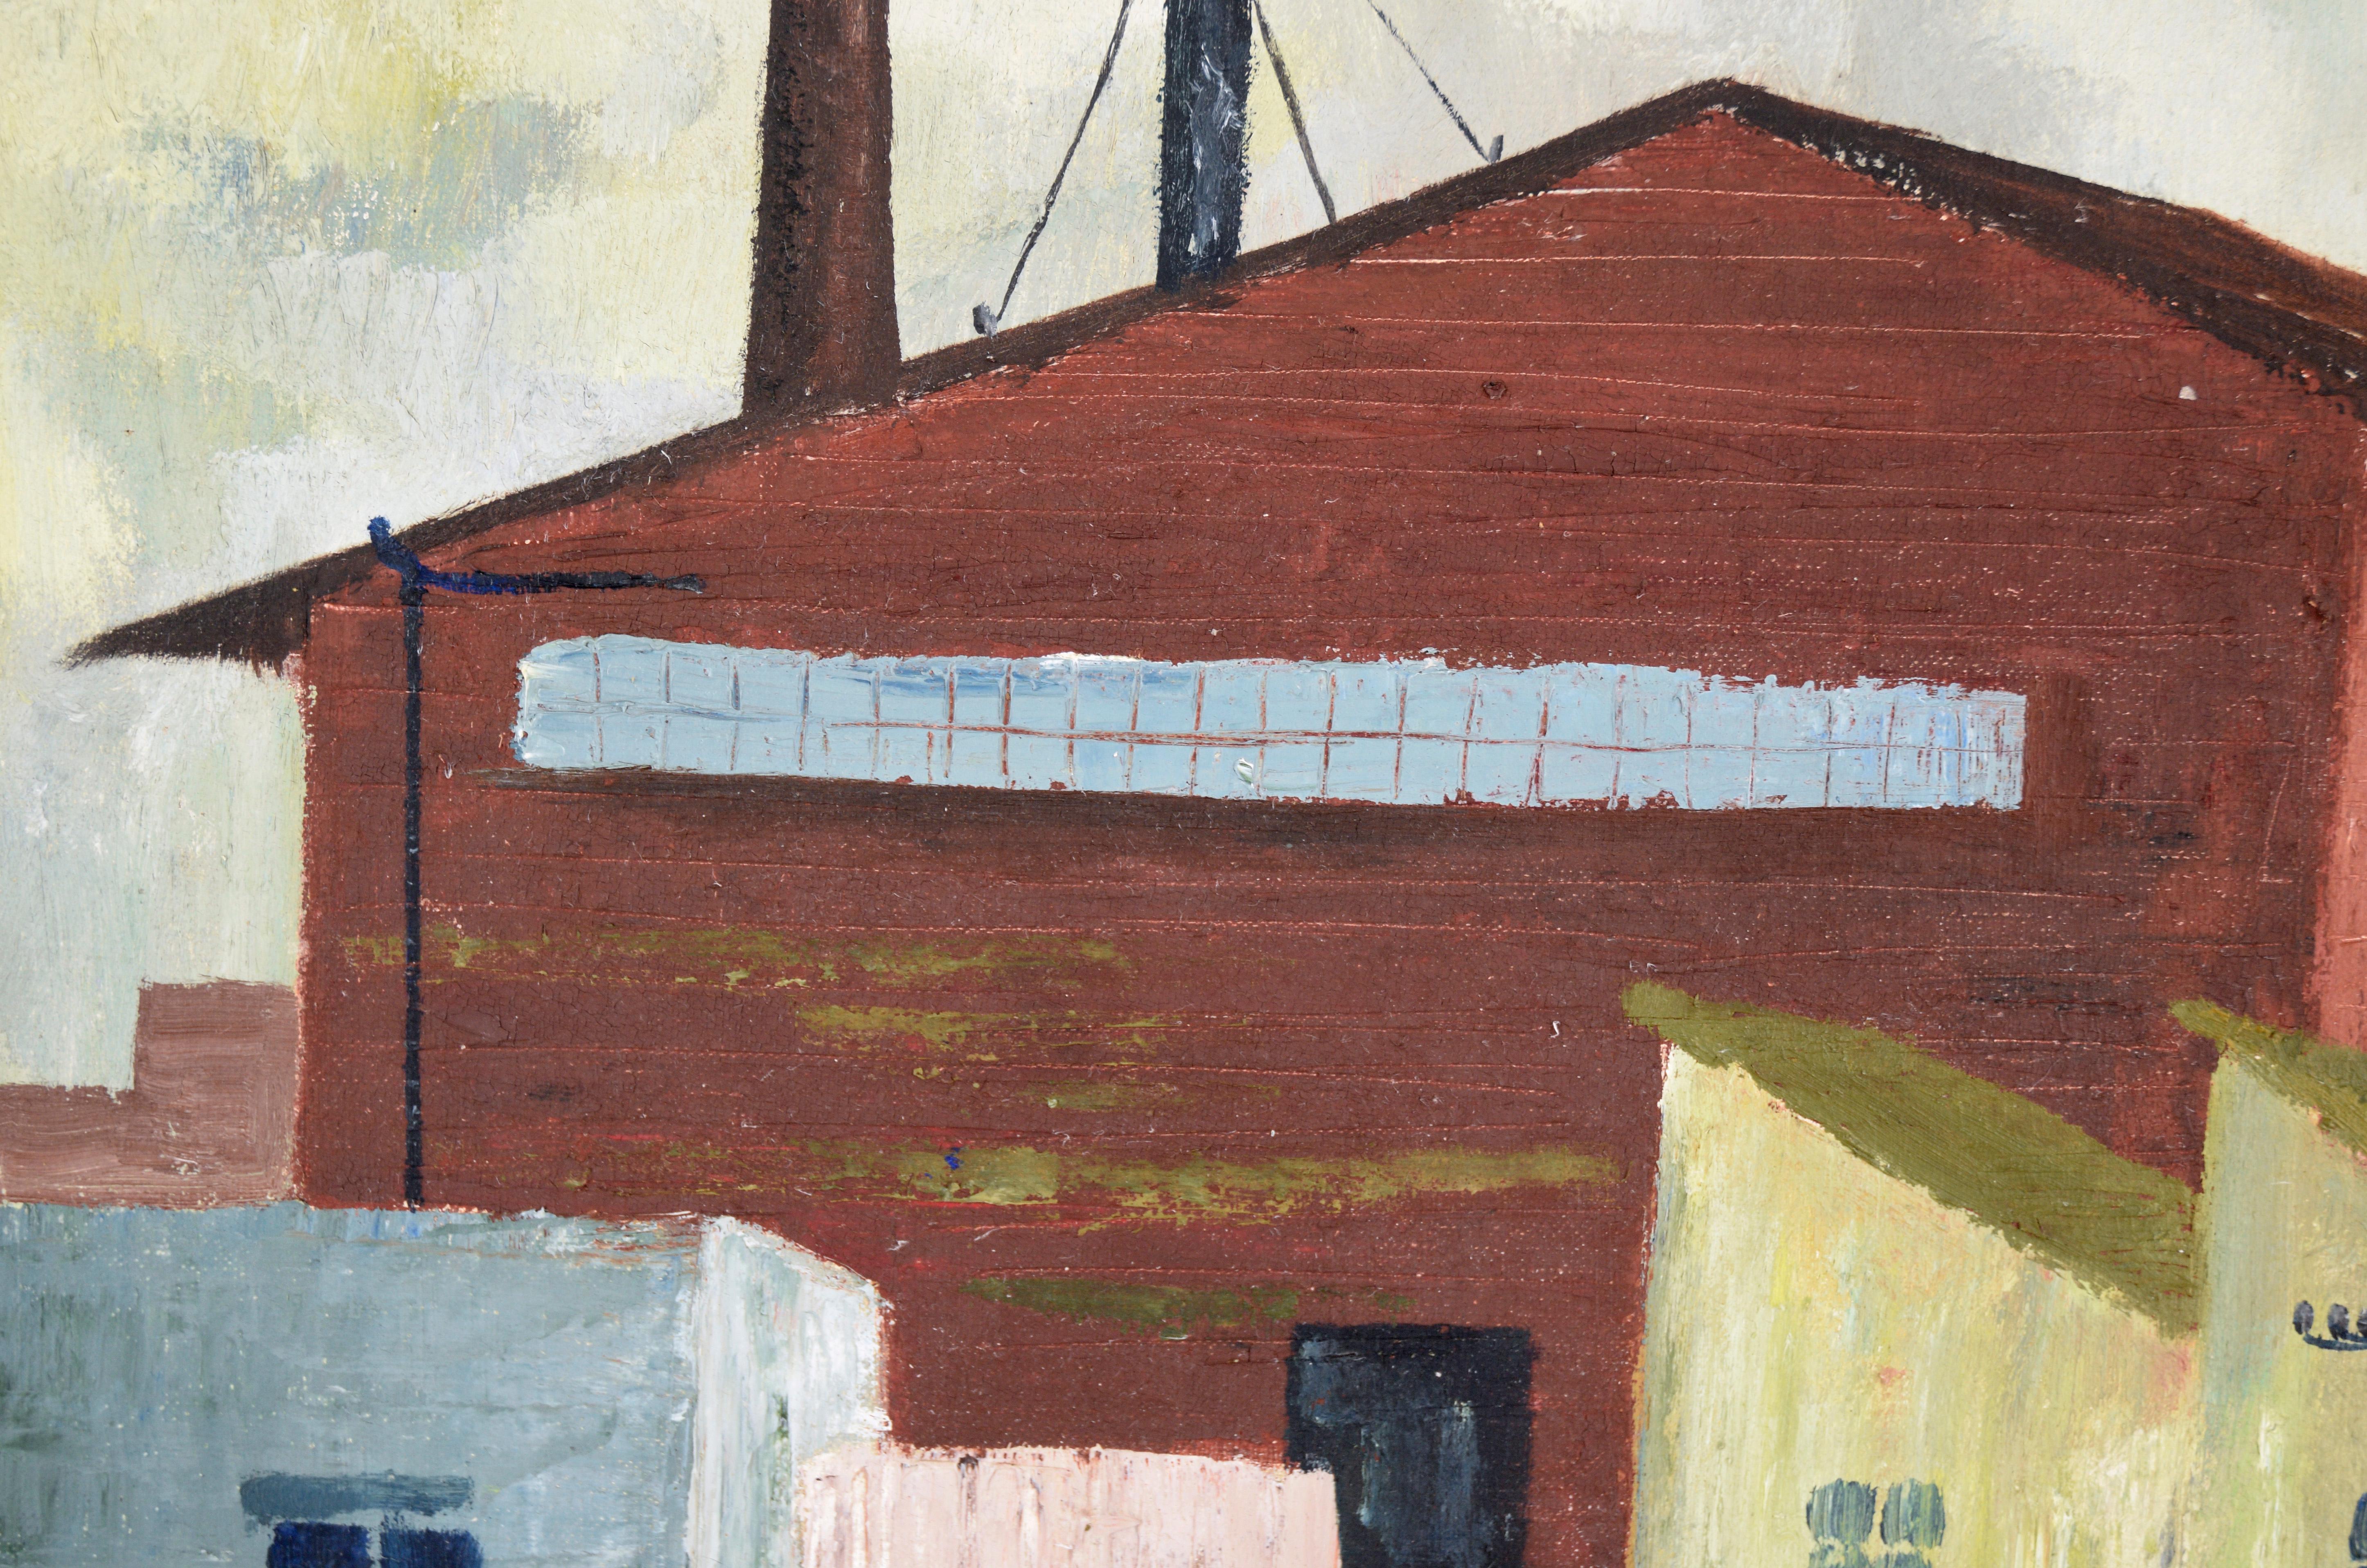 Paysage industriel avec maisons en rangée, huile sur lin

Paysage industriel audacieux de Doris Lyons Hoover (Américaine, 1927-2014). Un grand bâtiment rouge avec des cheminées domine le paysage, se dressant au-dessus des bâtiments environnants. Le